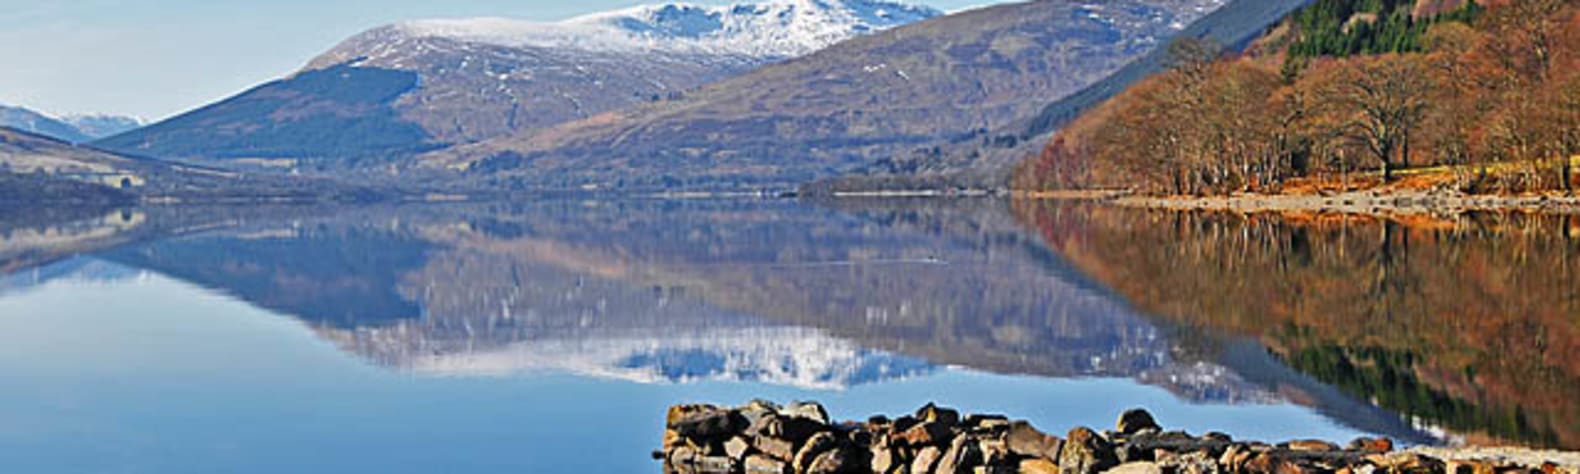 Loch Earn